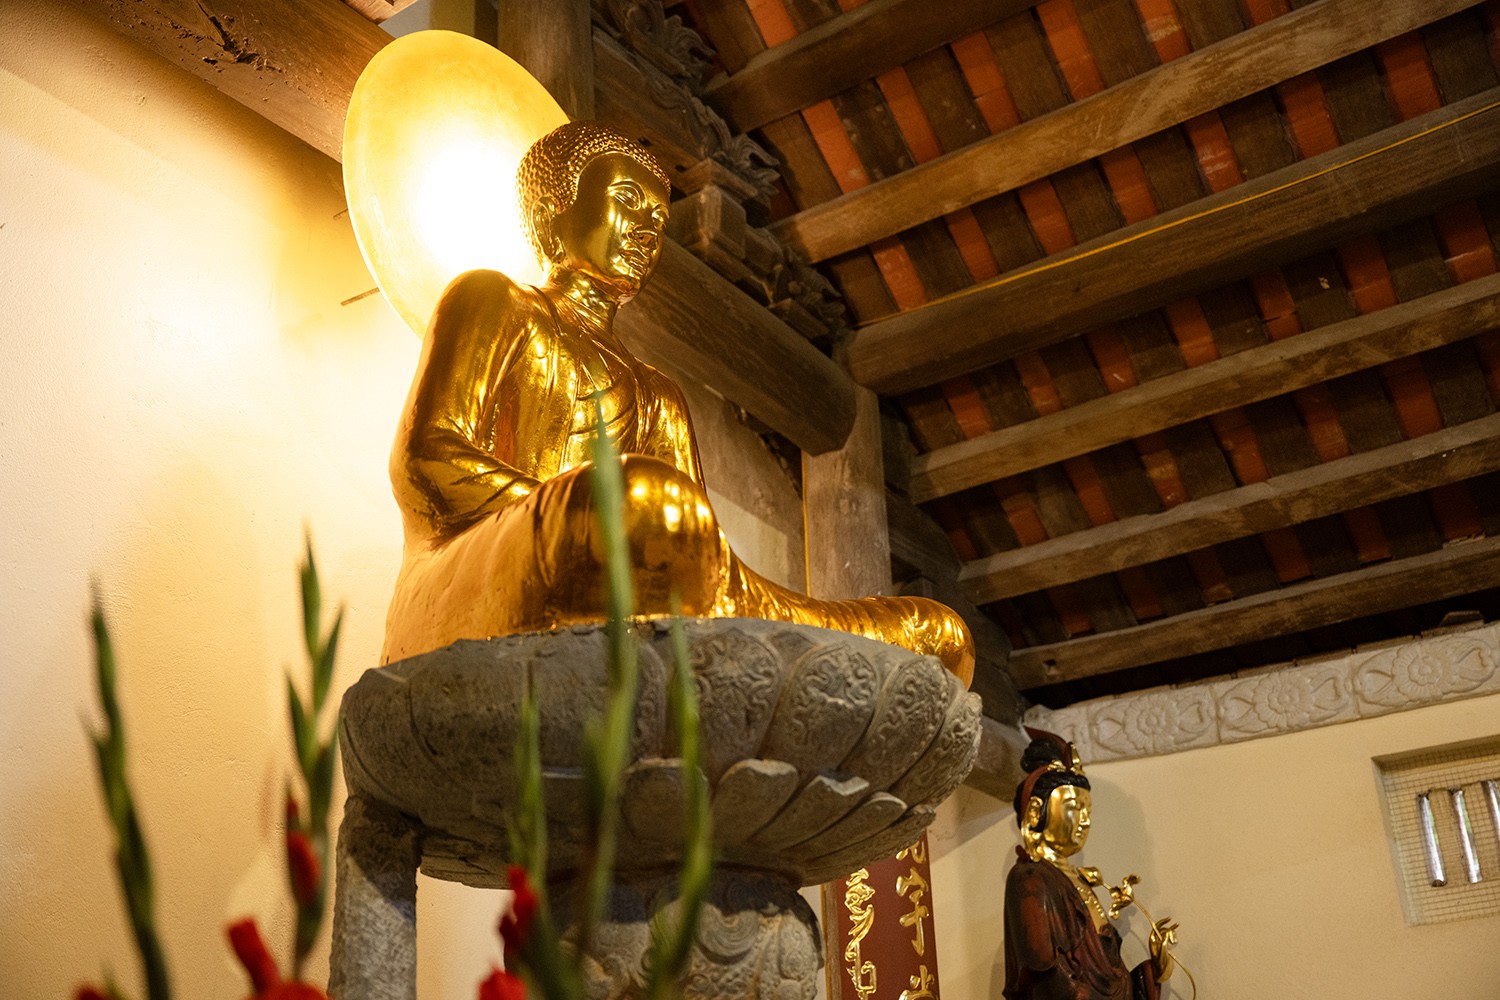 Hiện trong chùa Ngô Xá còn lưu giữ được nhiều cổ vật từ phế tích bảo tháp Chương Sơn. Trong số đó, có bức tượng Phật A Di Đà là quý giá bậc nhất.